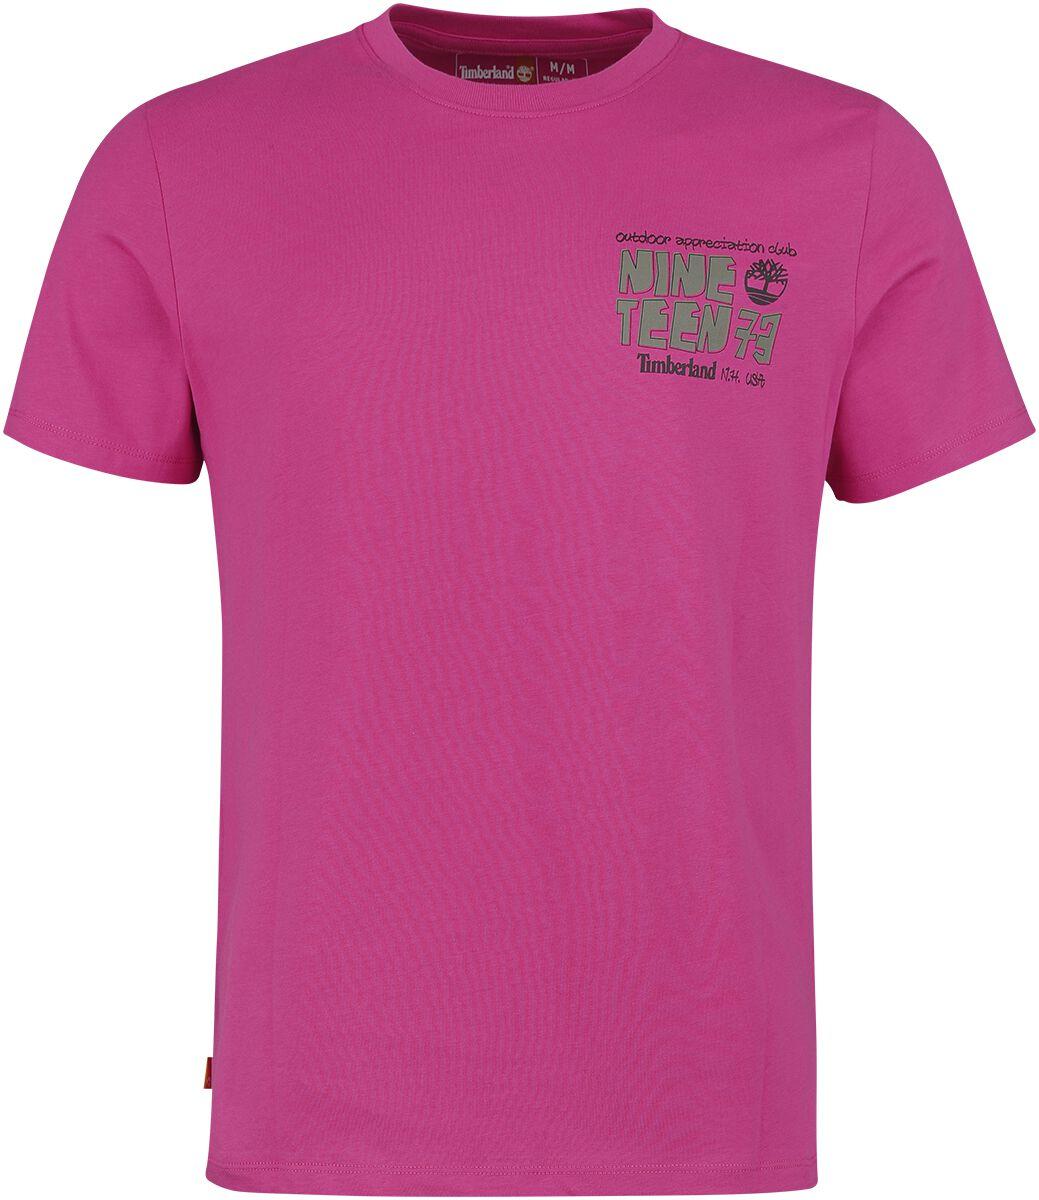 timberland t-shirt - outdoor back graphic tee - s bis m - fÃ¼r mÃ¤nner - grÃ¶ÃŸe m - pink